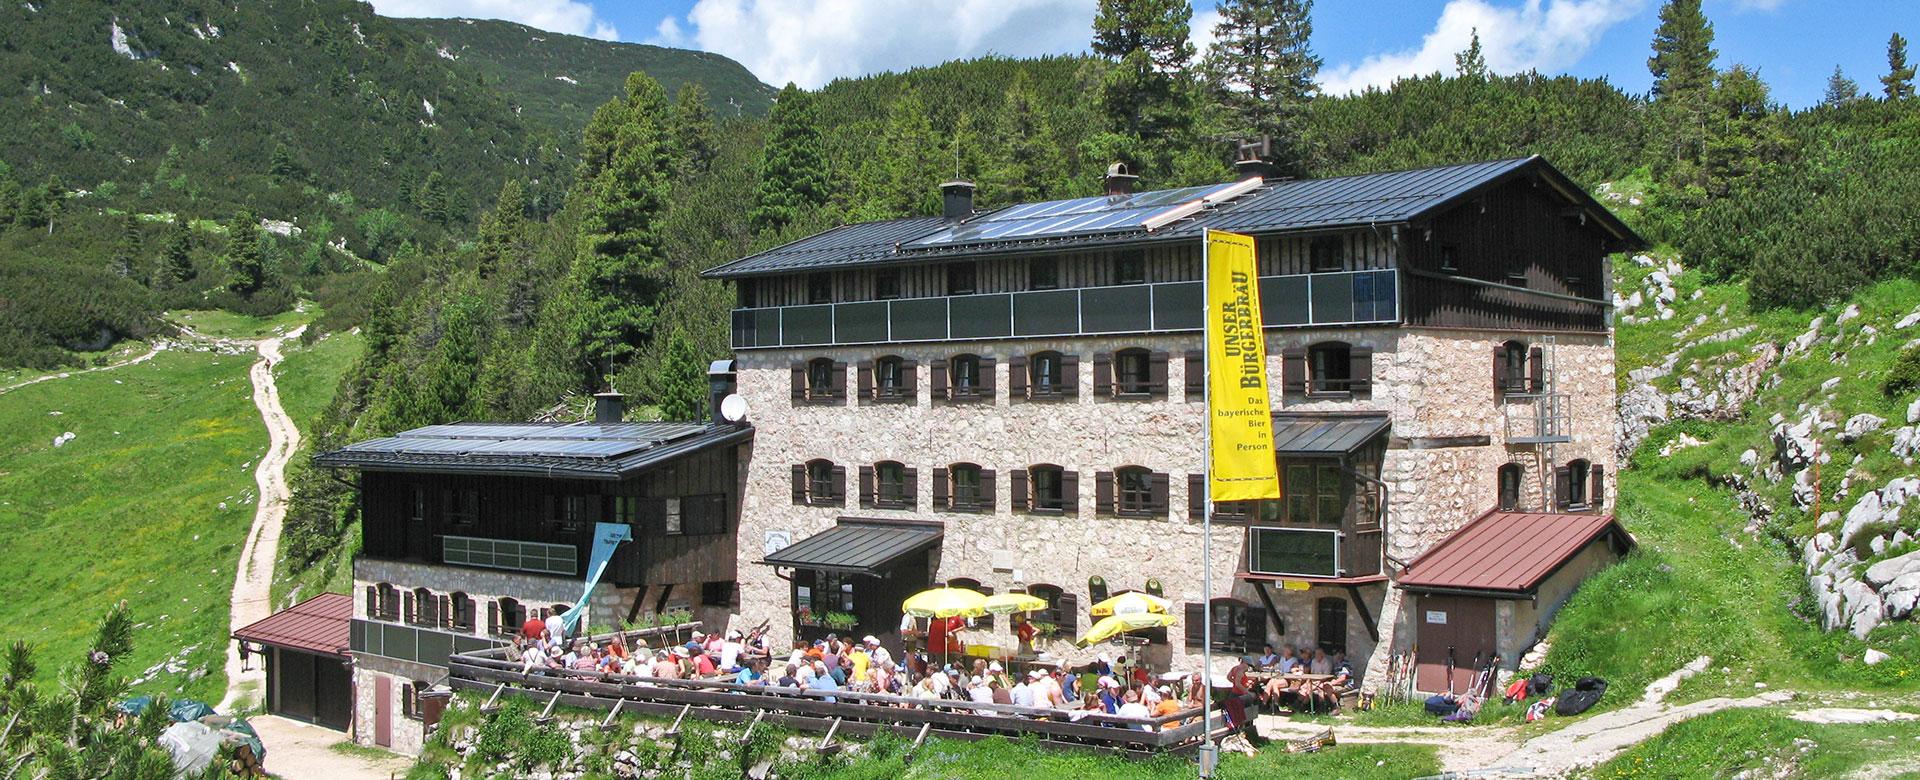 Neue Traunsteiner Hütte - Reiteralpe - Berchtesgadener Alpen